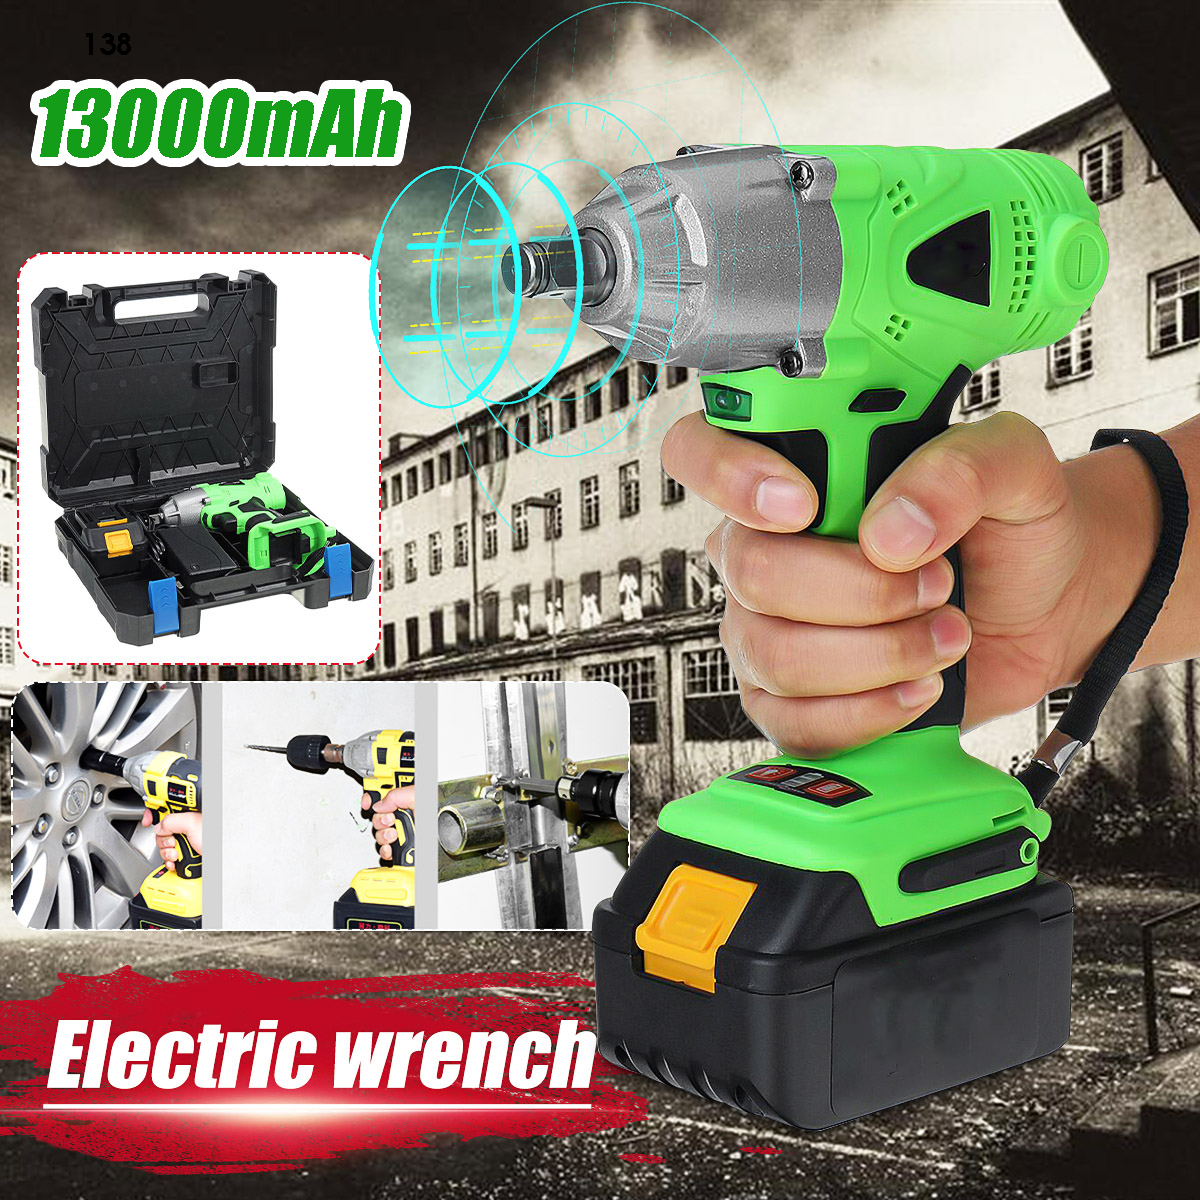 280nm-13000mAh-Li-Battery-Electric-Wrench-Car-Repair-Electric-Drill-Screwdriver-1611454-1